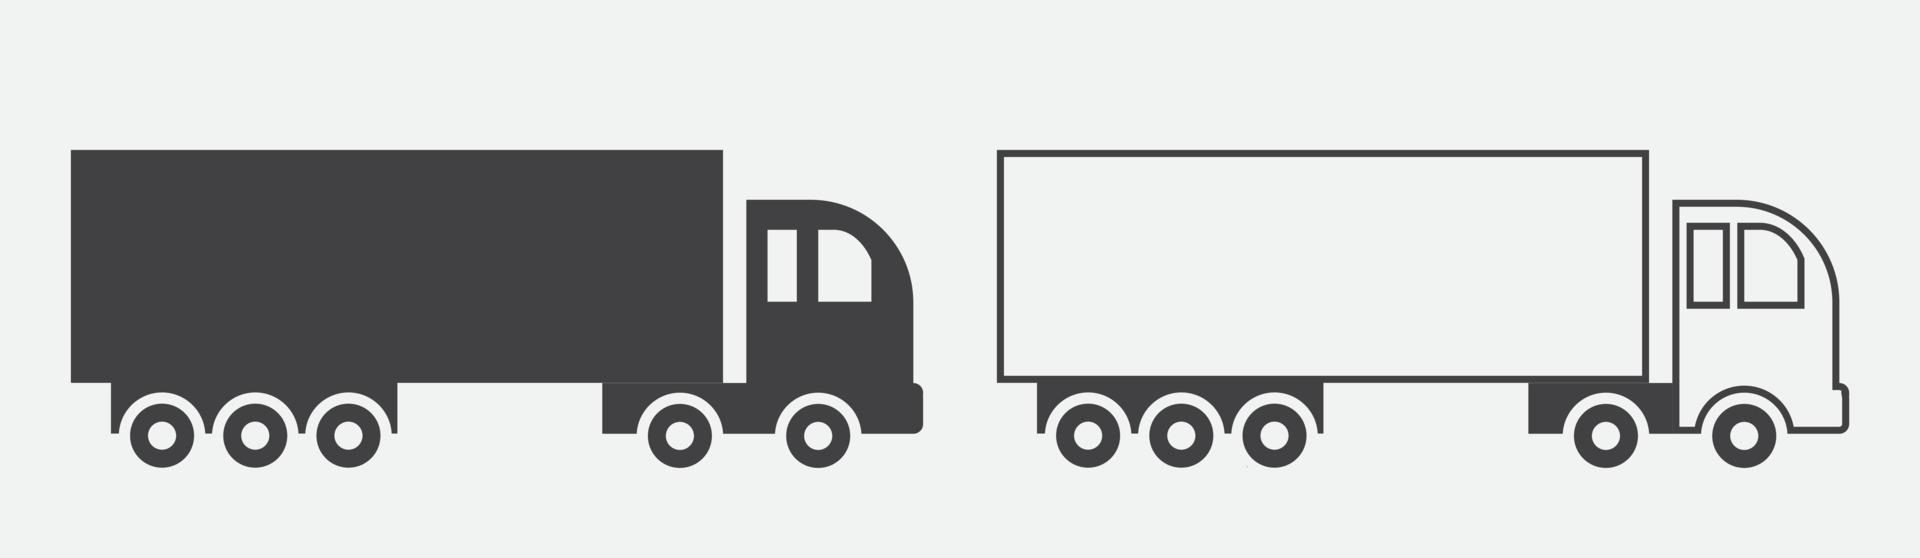 camion nero icone vettoriali illustrazione e line art su sfondo bianco